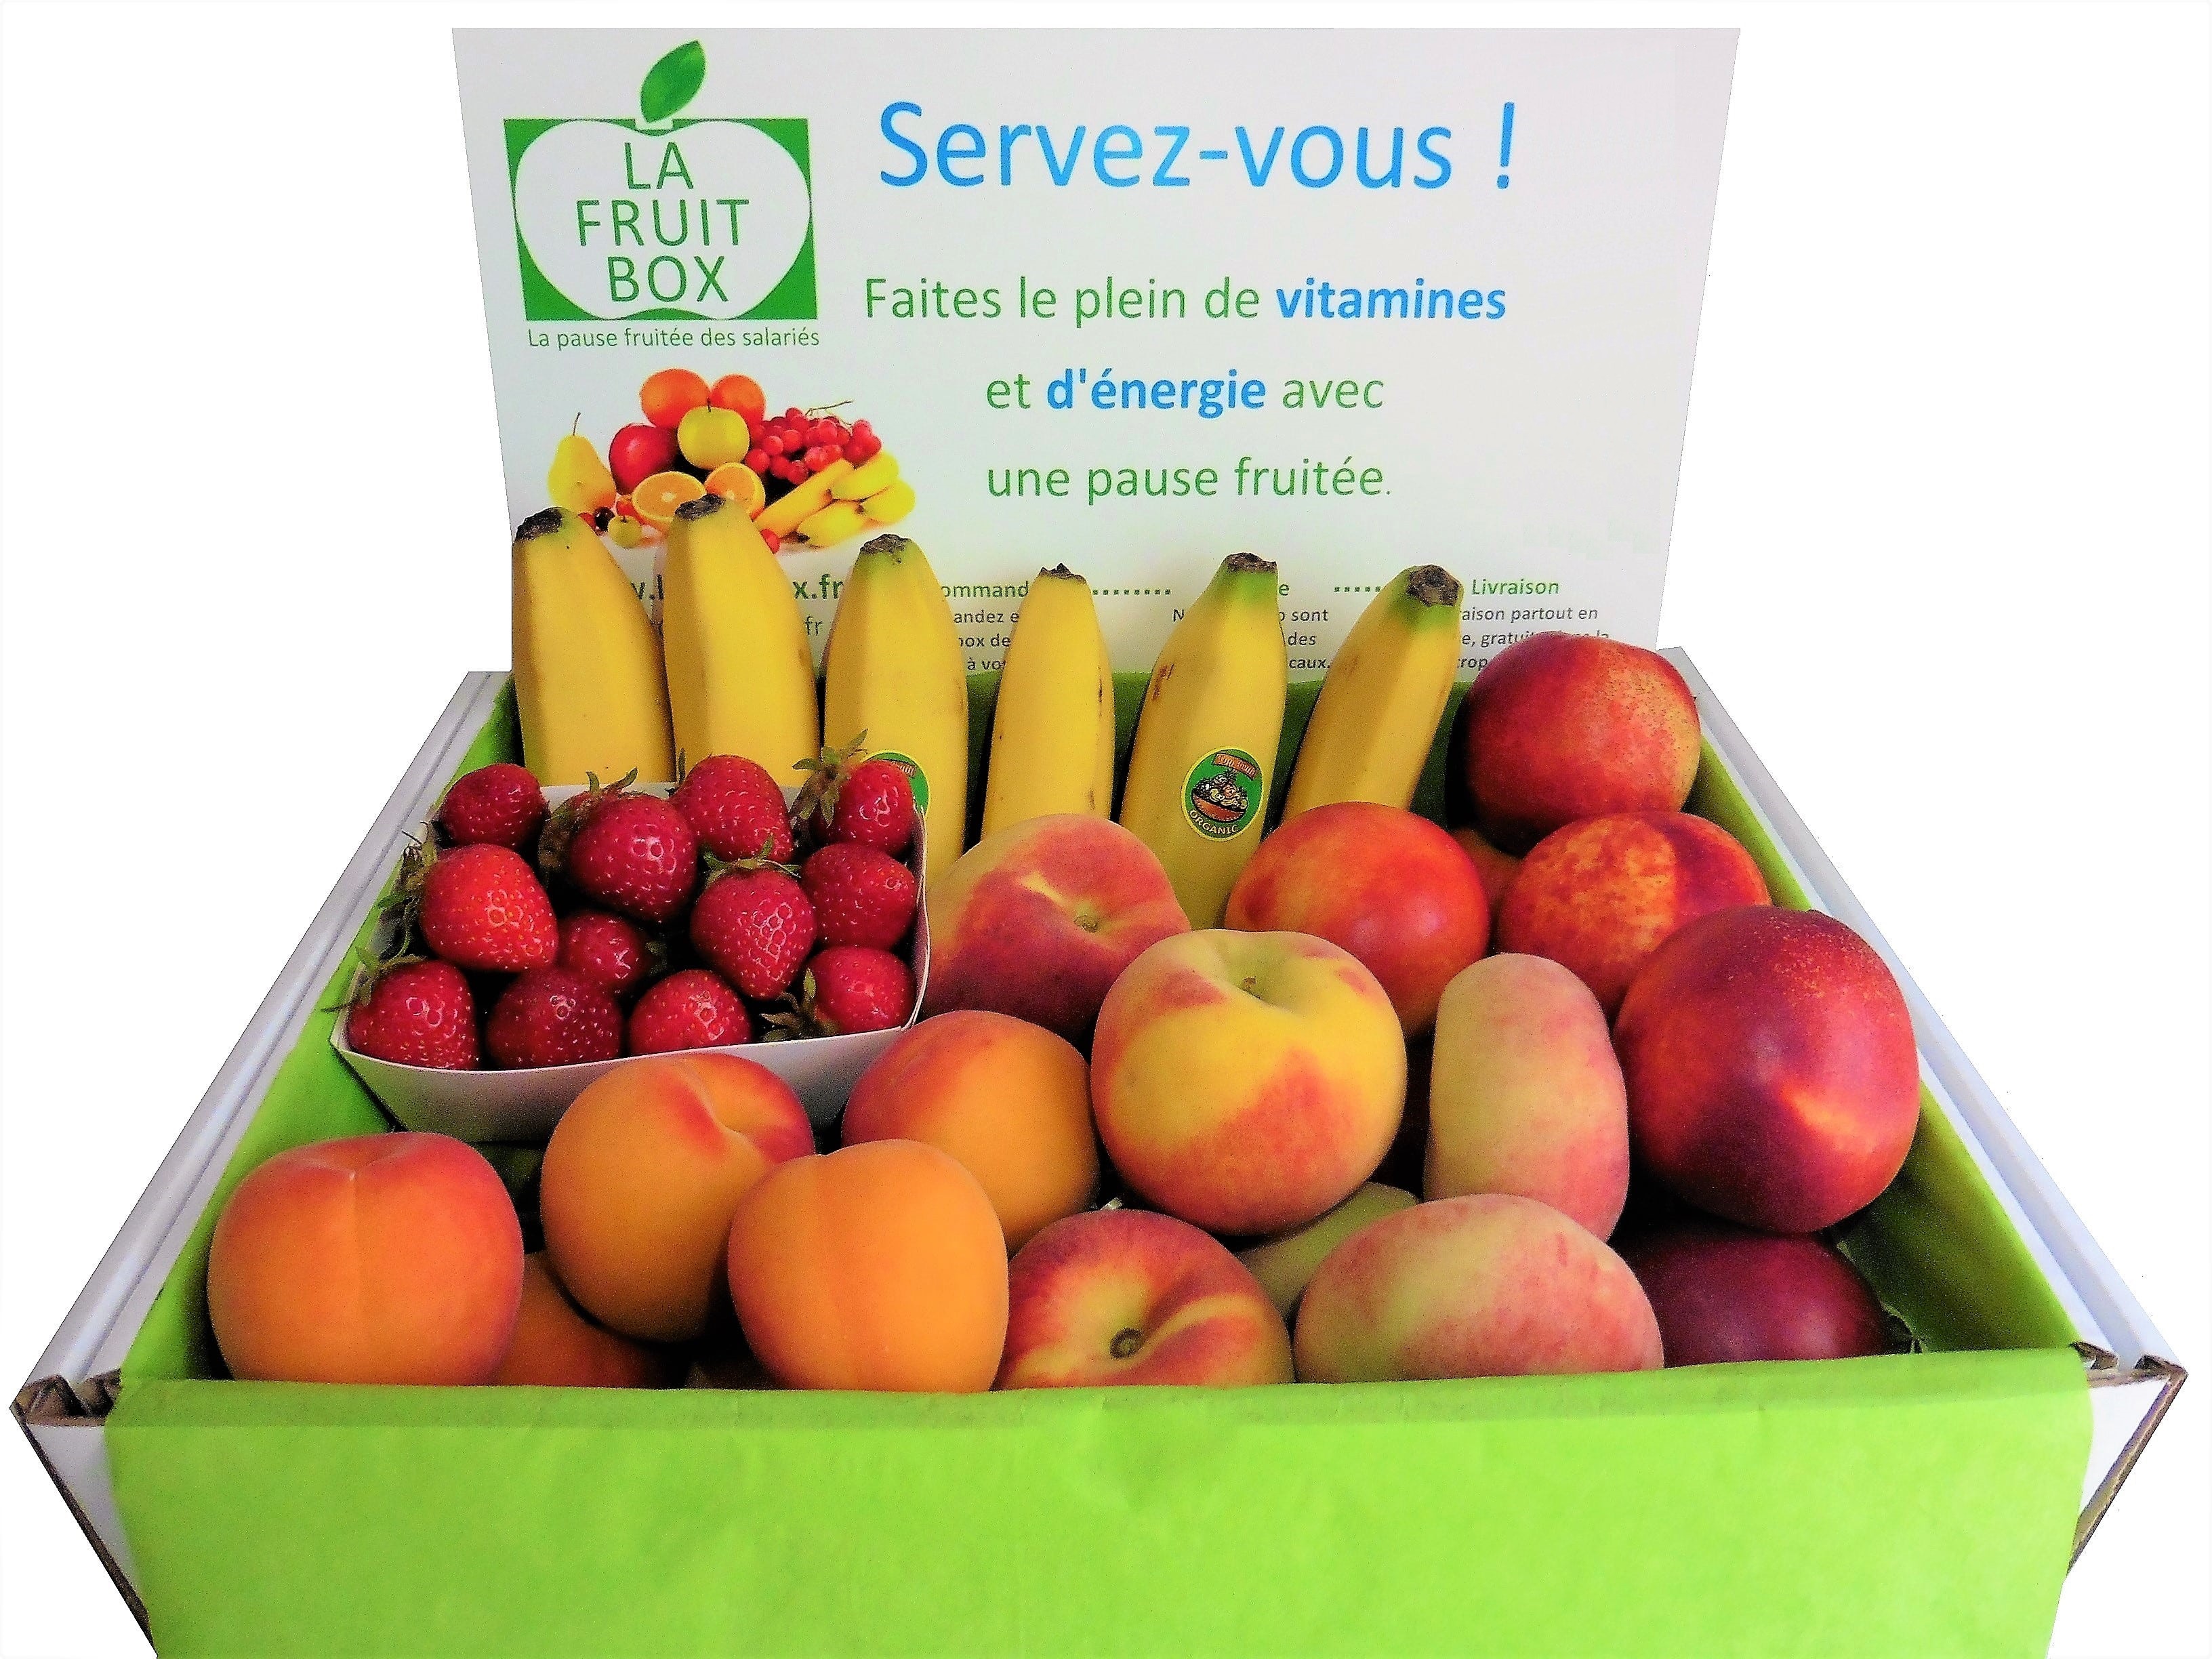 petite box 3kg fruits de saison locaux lafruitbox nantes